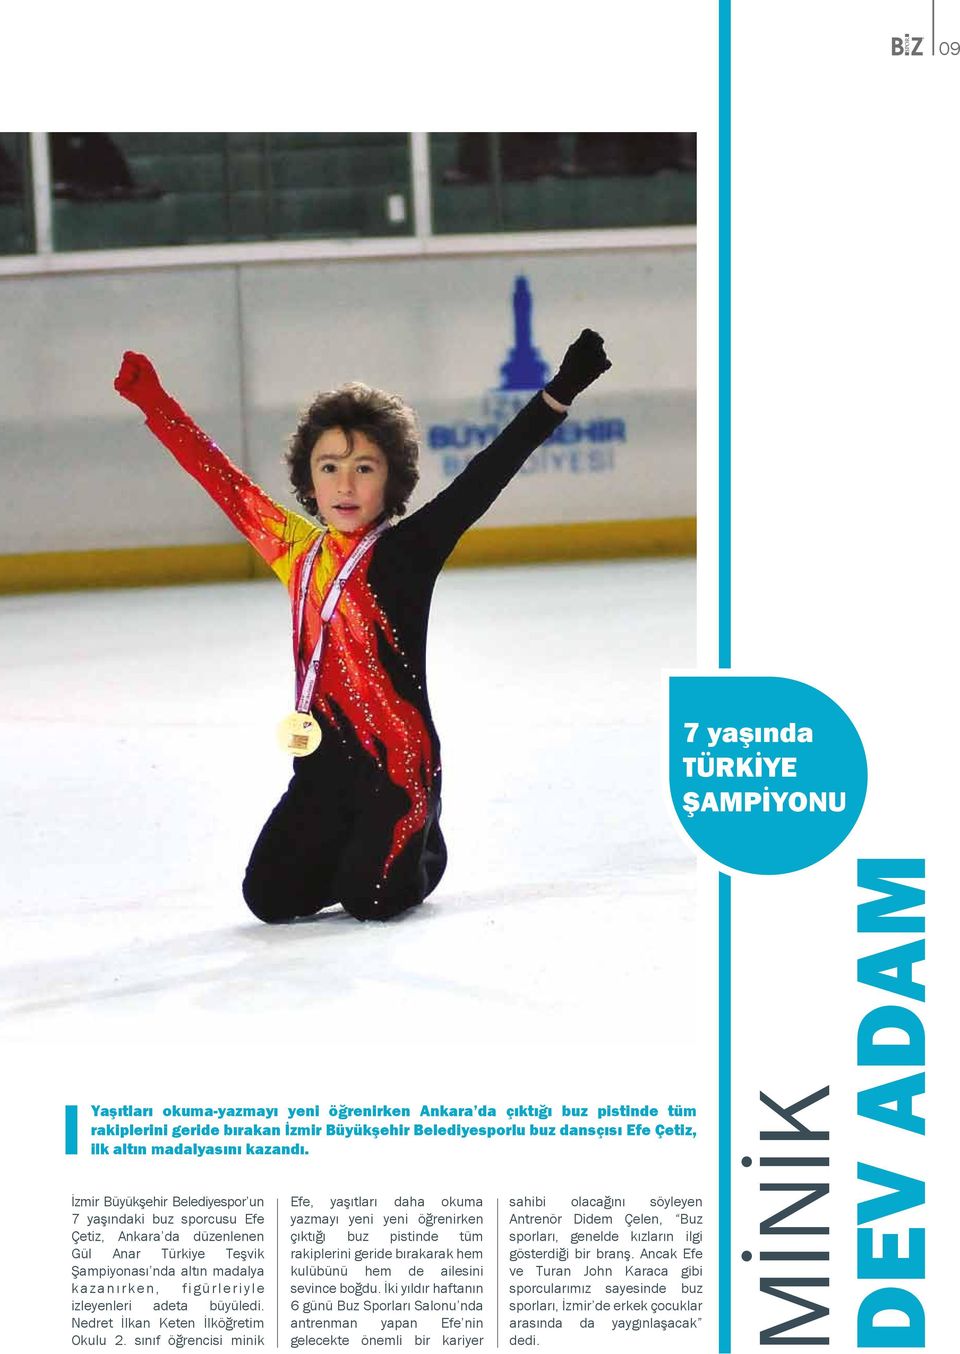 İzmir Büyükşehir Belediyespor un 7 yaşındaki buz sporcusu Efe Çetiz, Ankara da düzenlenen Gül Anar Türkiye Teşvik Şampiyonası nda altın madalya kazanırken, figürleriyle izleyenleri adeta büyüledi.